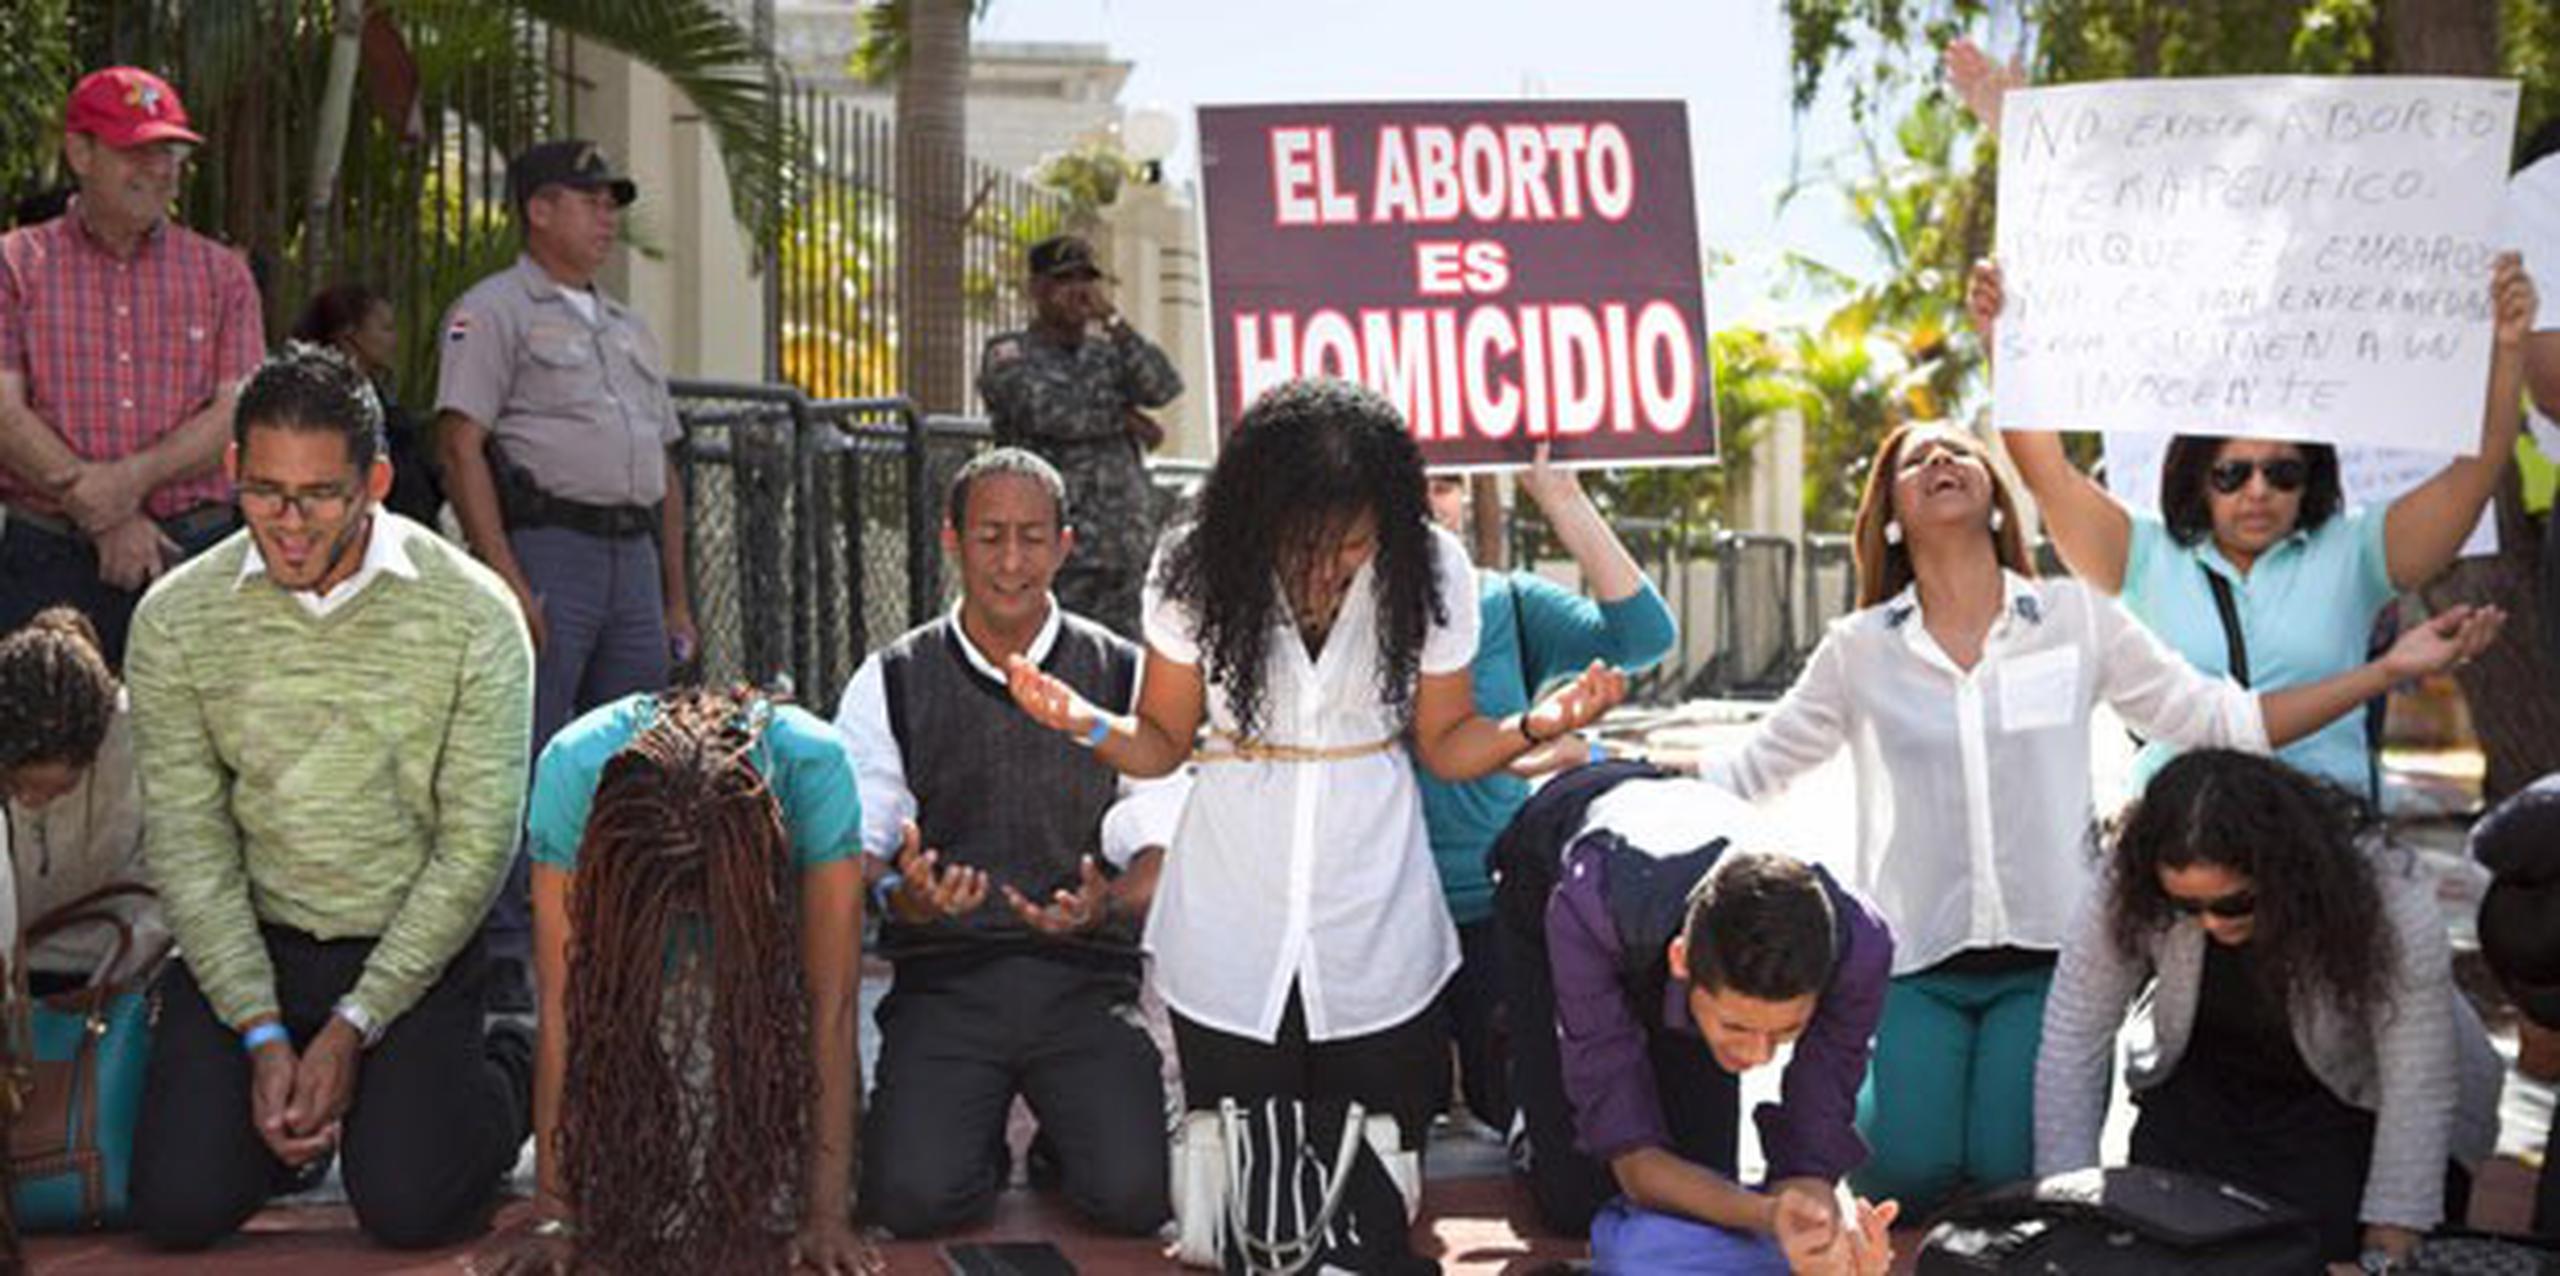 El aborto está prohibido en la constitución dominicana y código penal vigente. (EFE/Orlando Barría)
